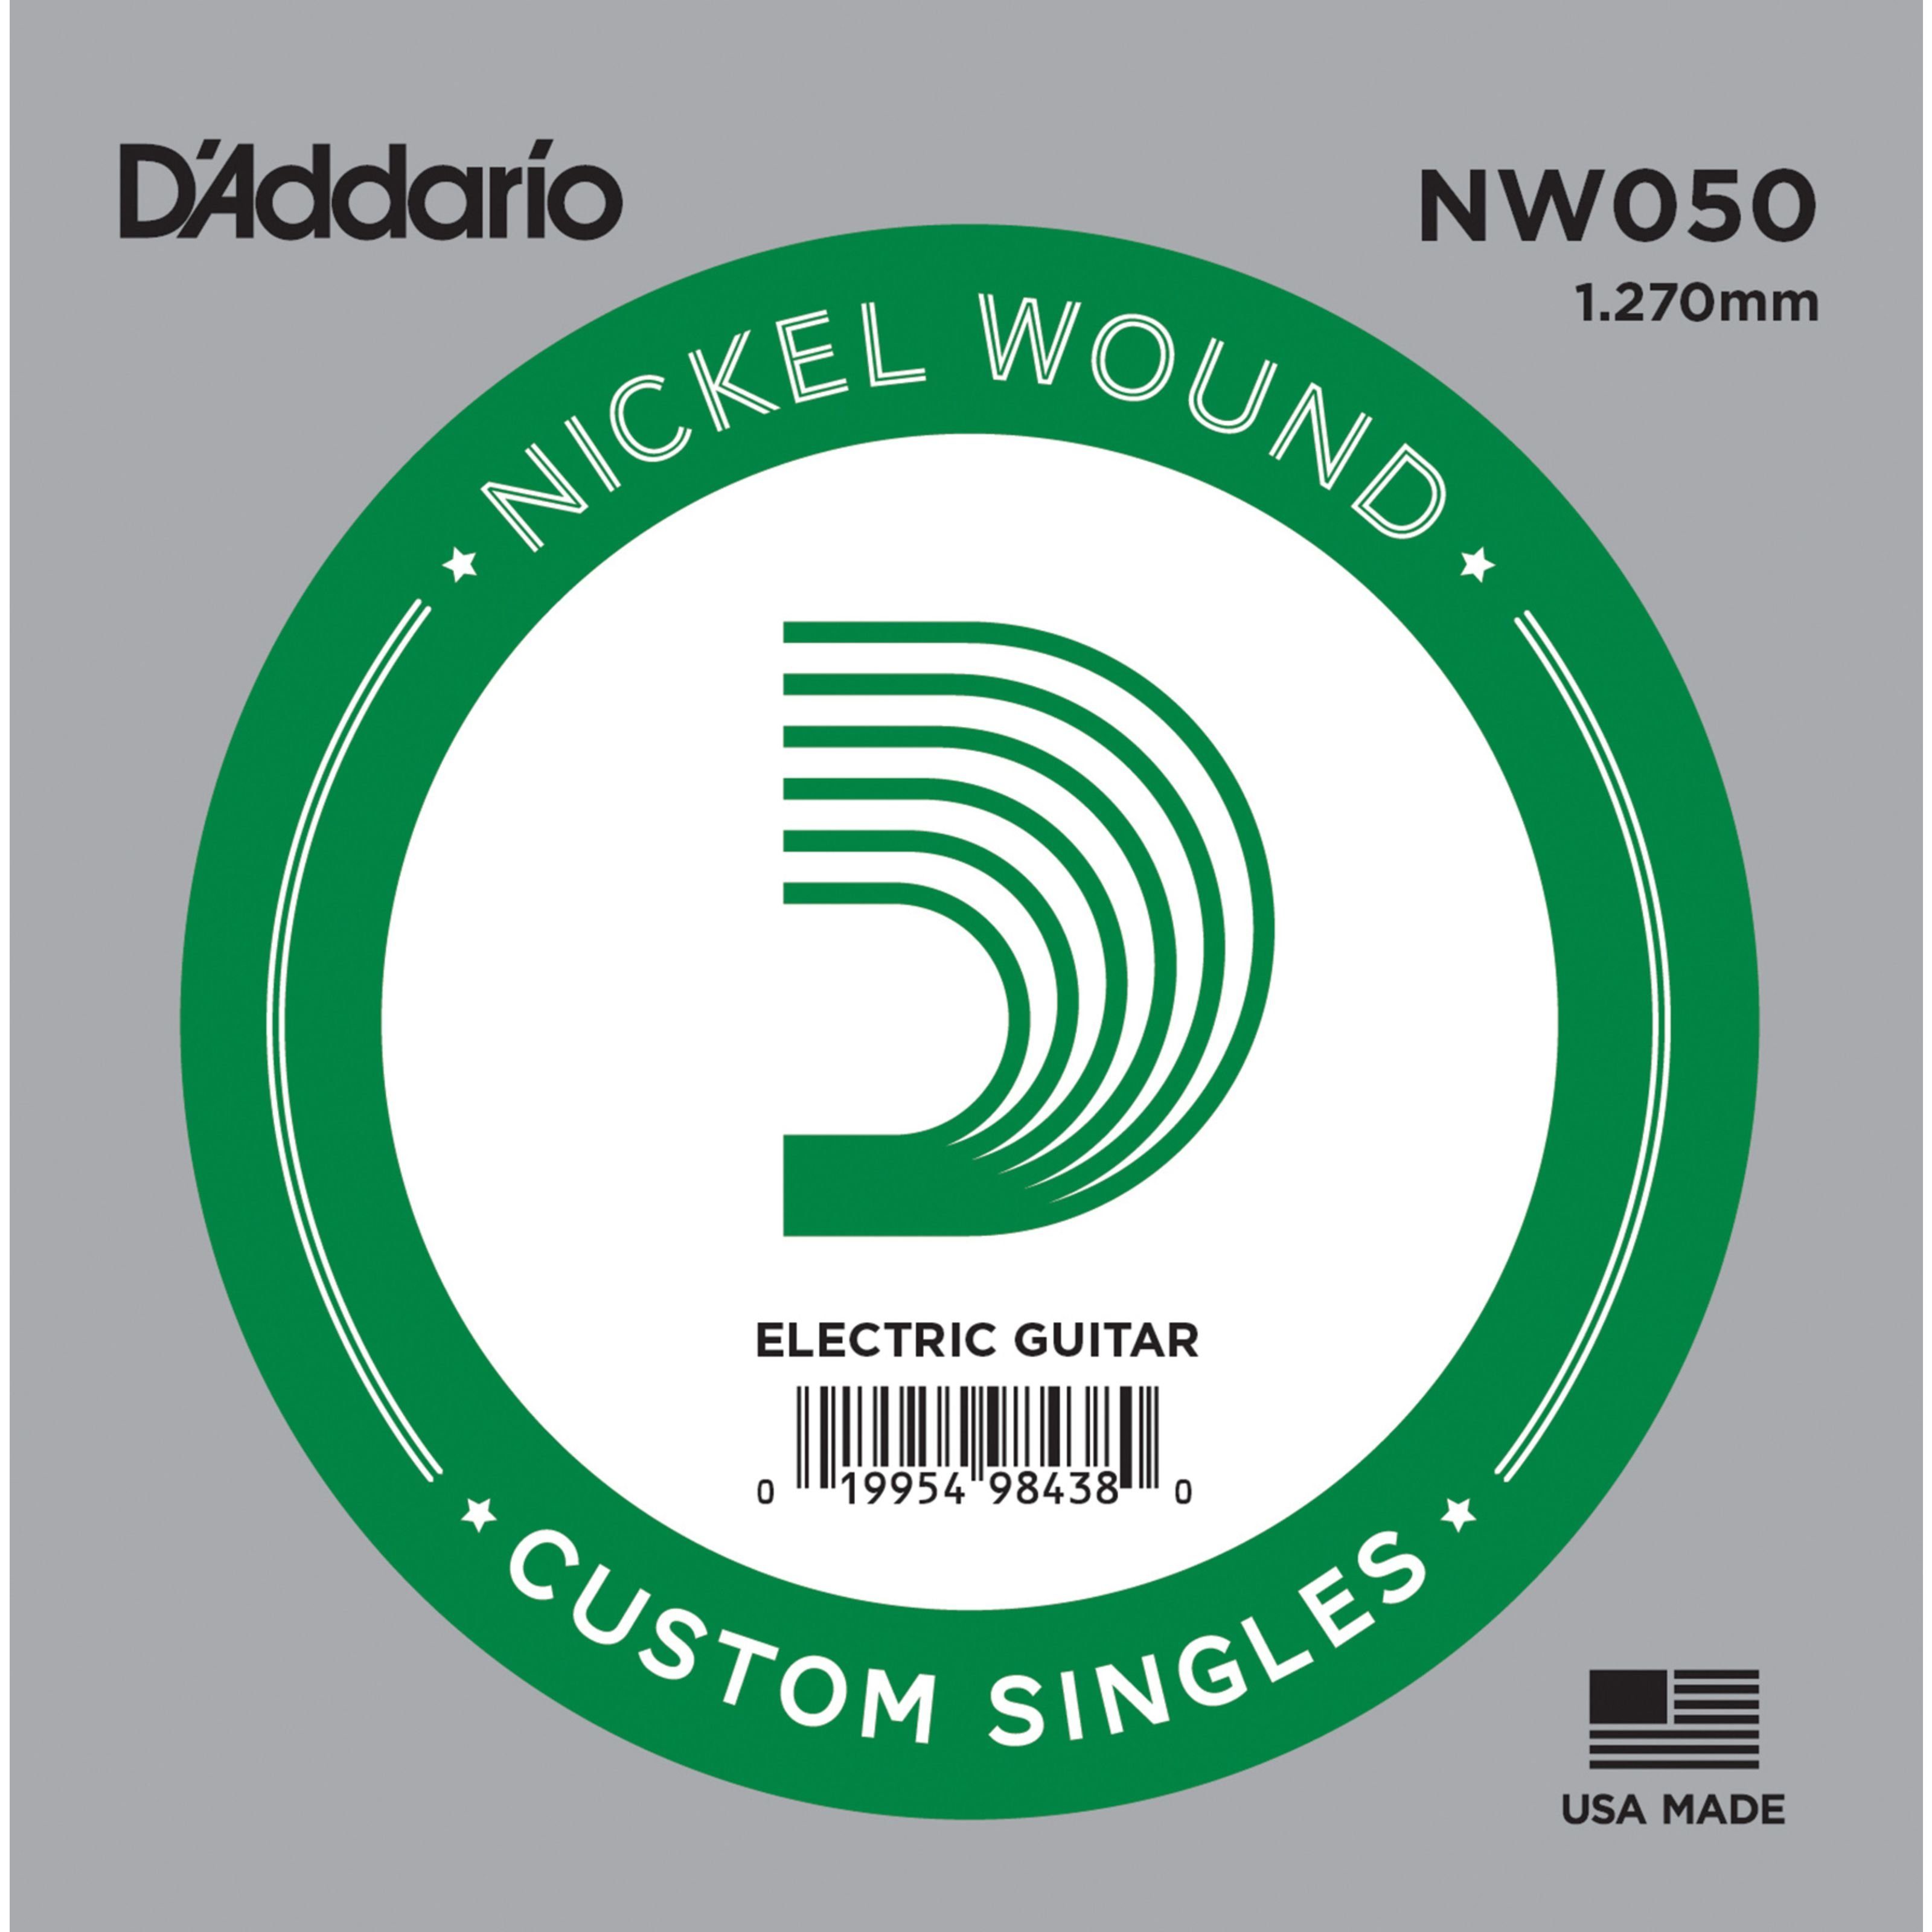 Gitarren Nickel Wound - Daddario Einzelsaite für NW050 Einzelsaite Spielzeug-Musikinstrument,